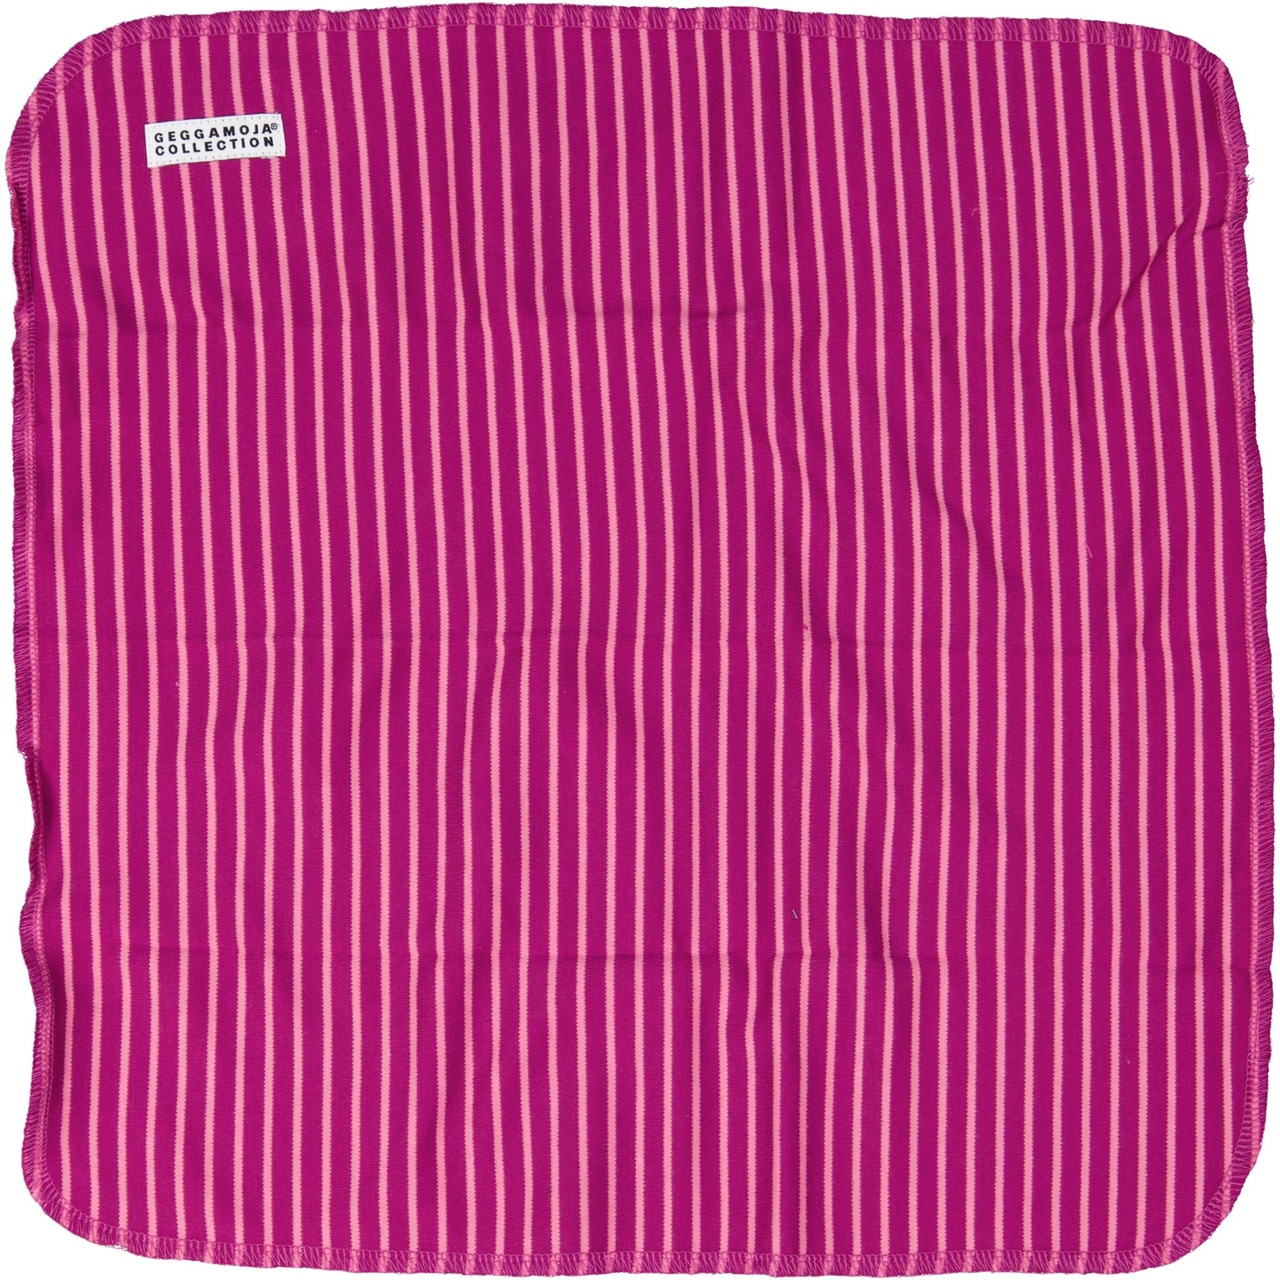 Cuddly blanket Purplepink stripe  One Size